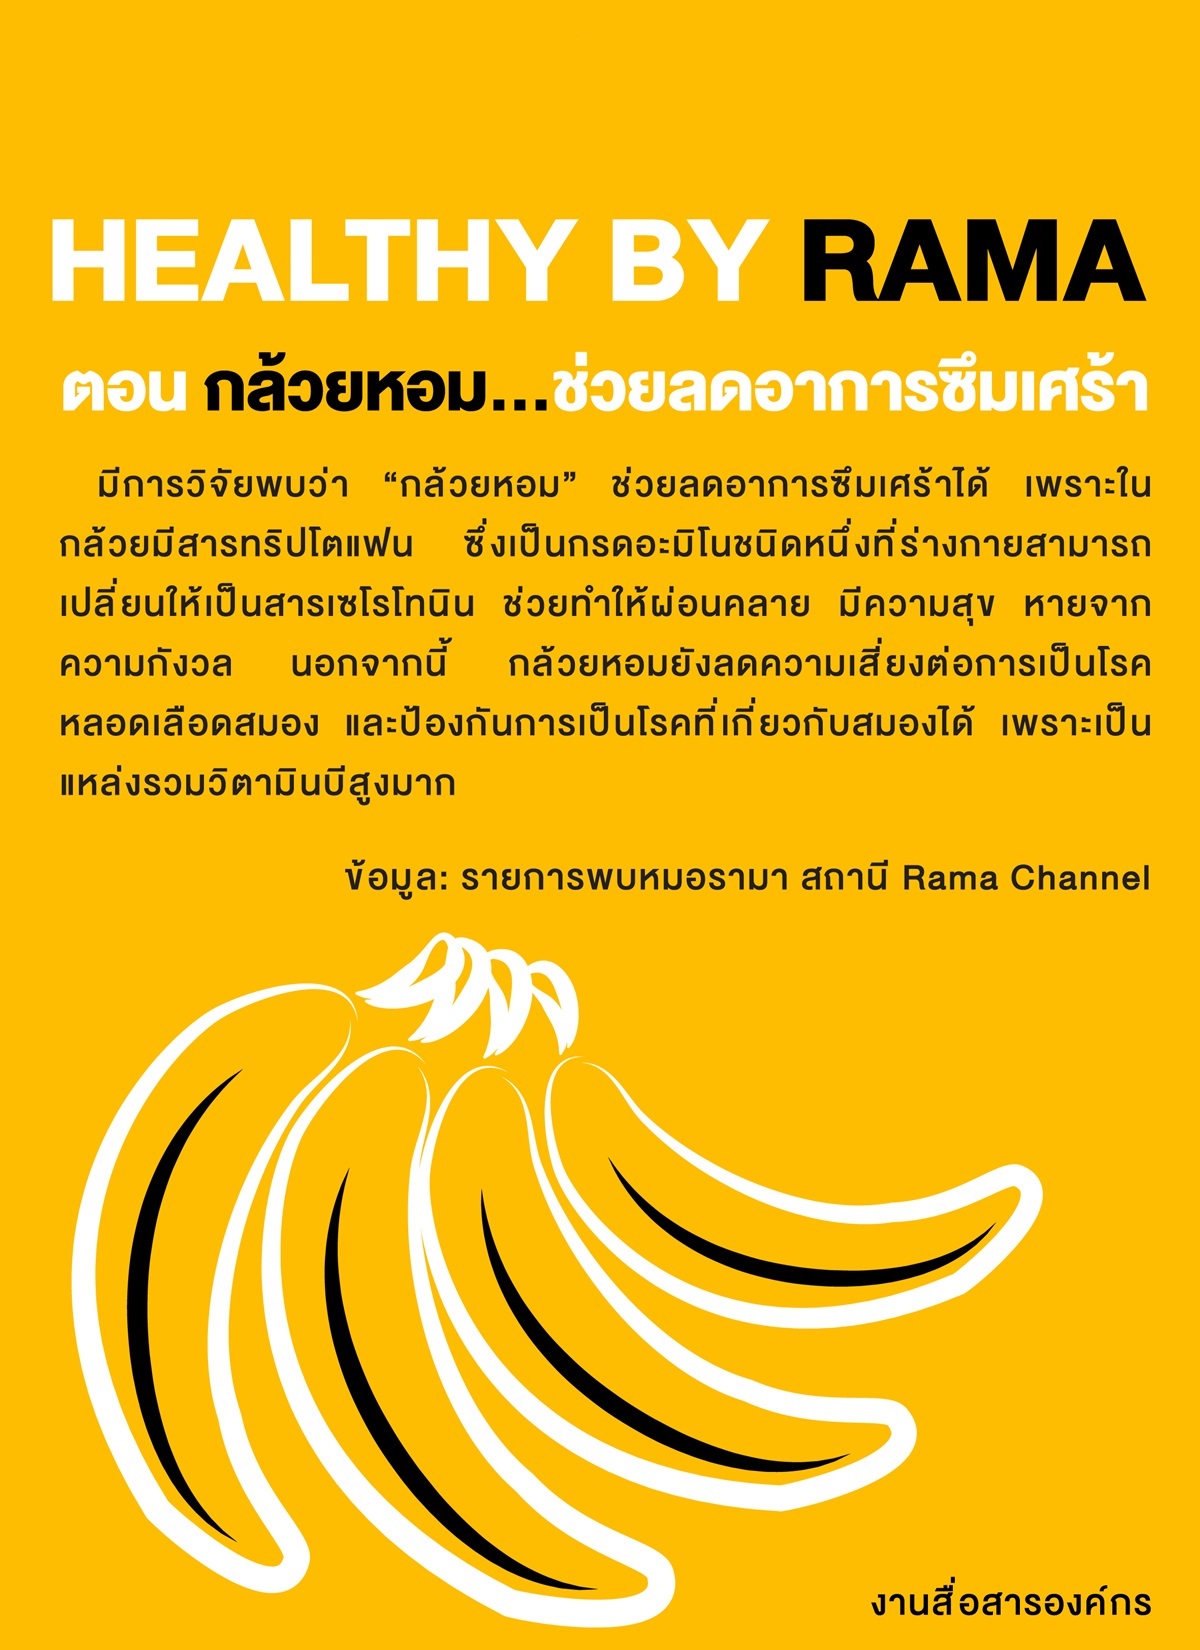 Healthy By Rama ตอน กล้วยหอม... ช่วยลดอาการซึมเศร้า